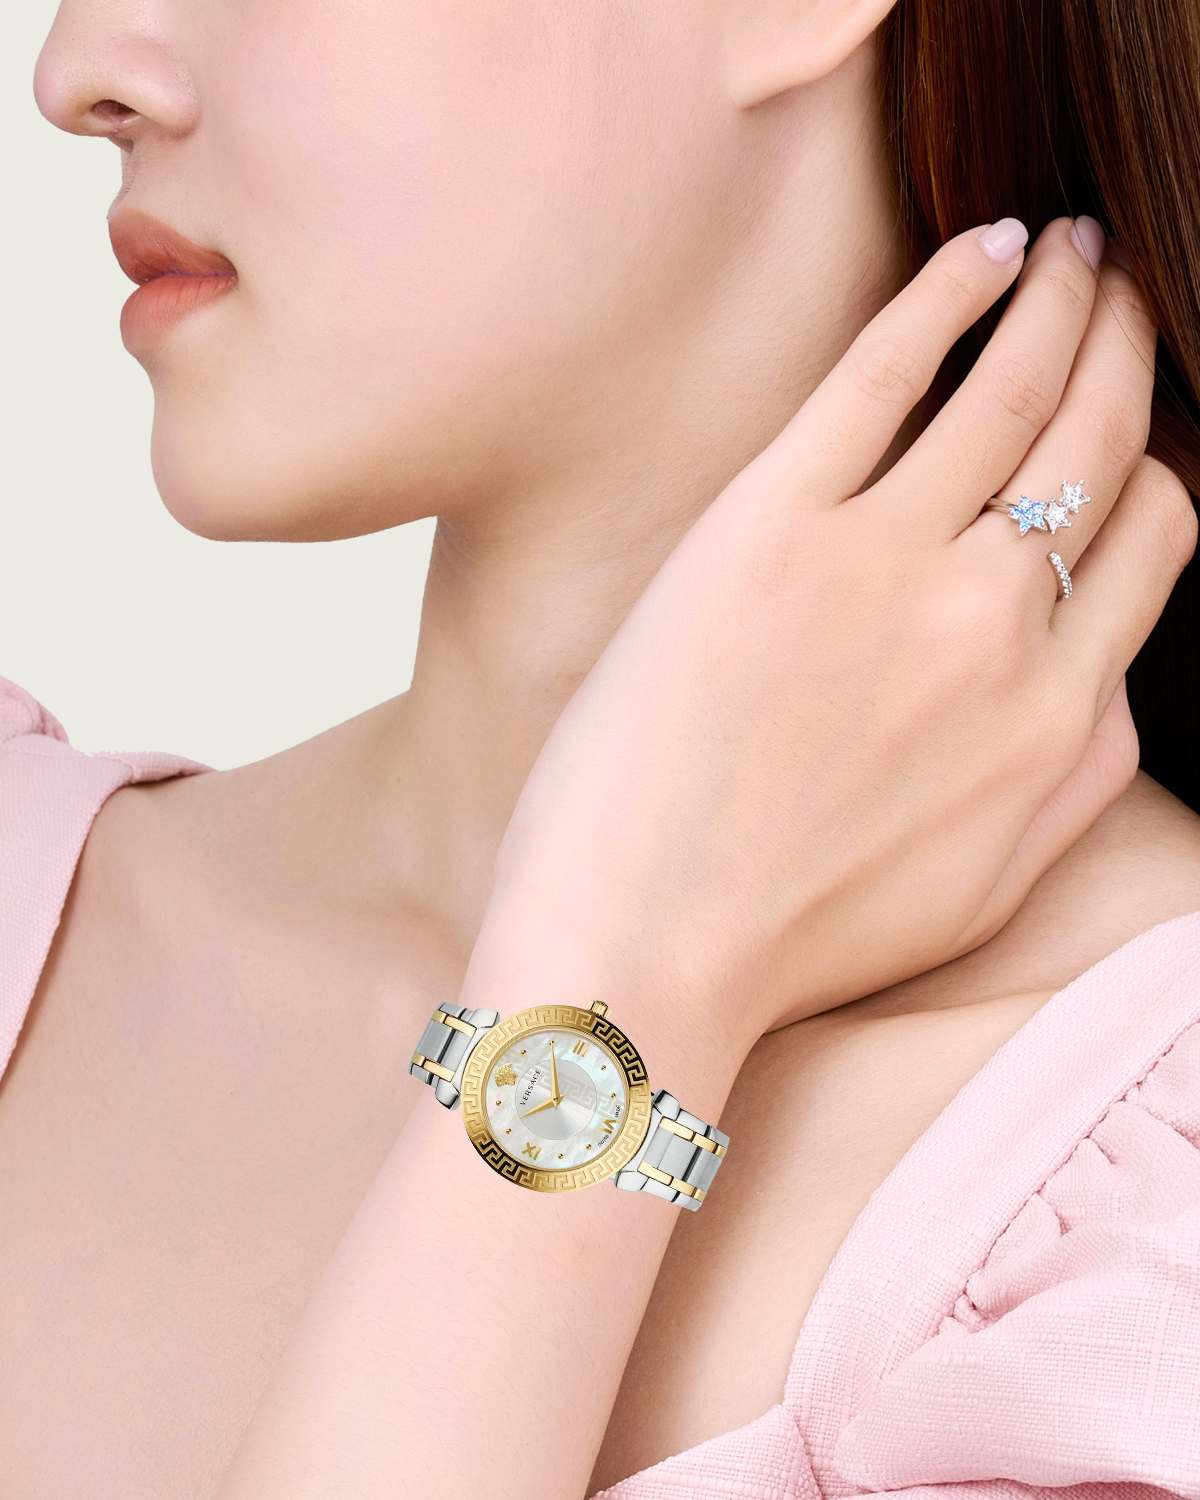 Mua đồng hồ Versace chính hãng, uy tín, giá tốt nhất tại Store Việt Nam.